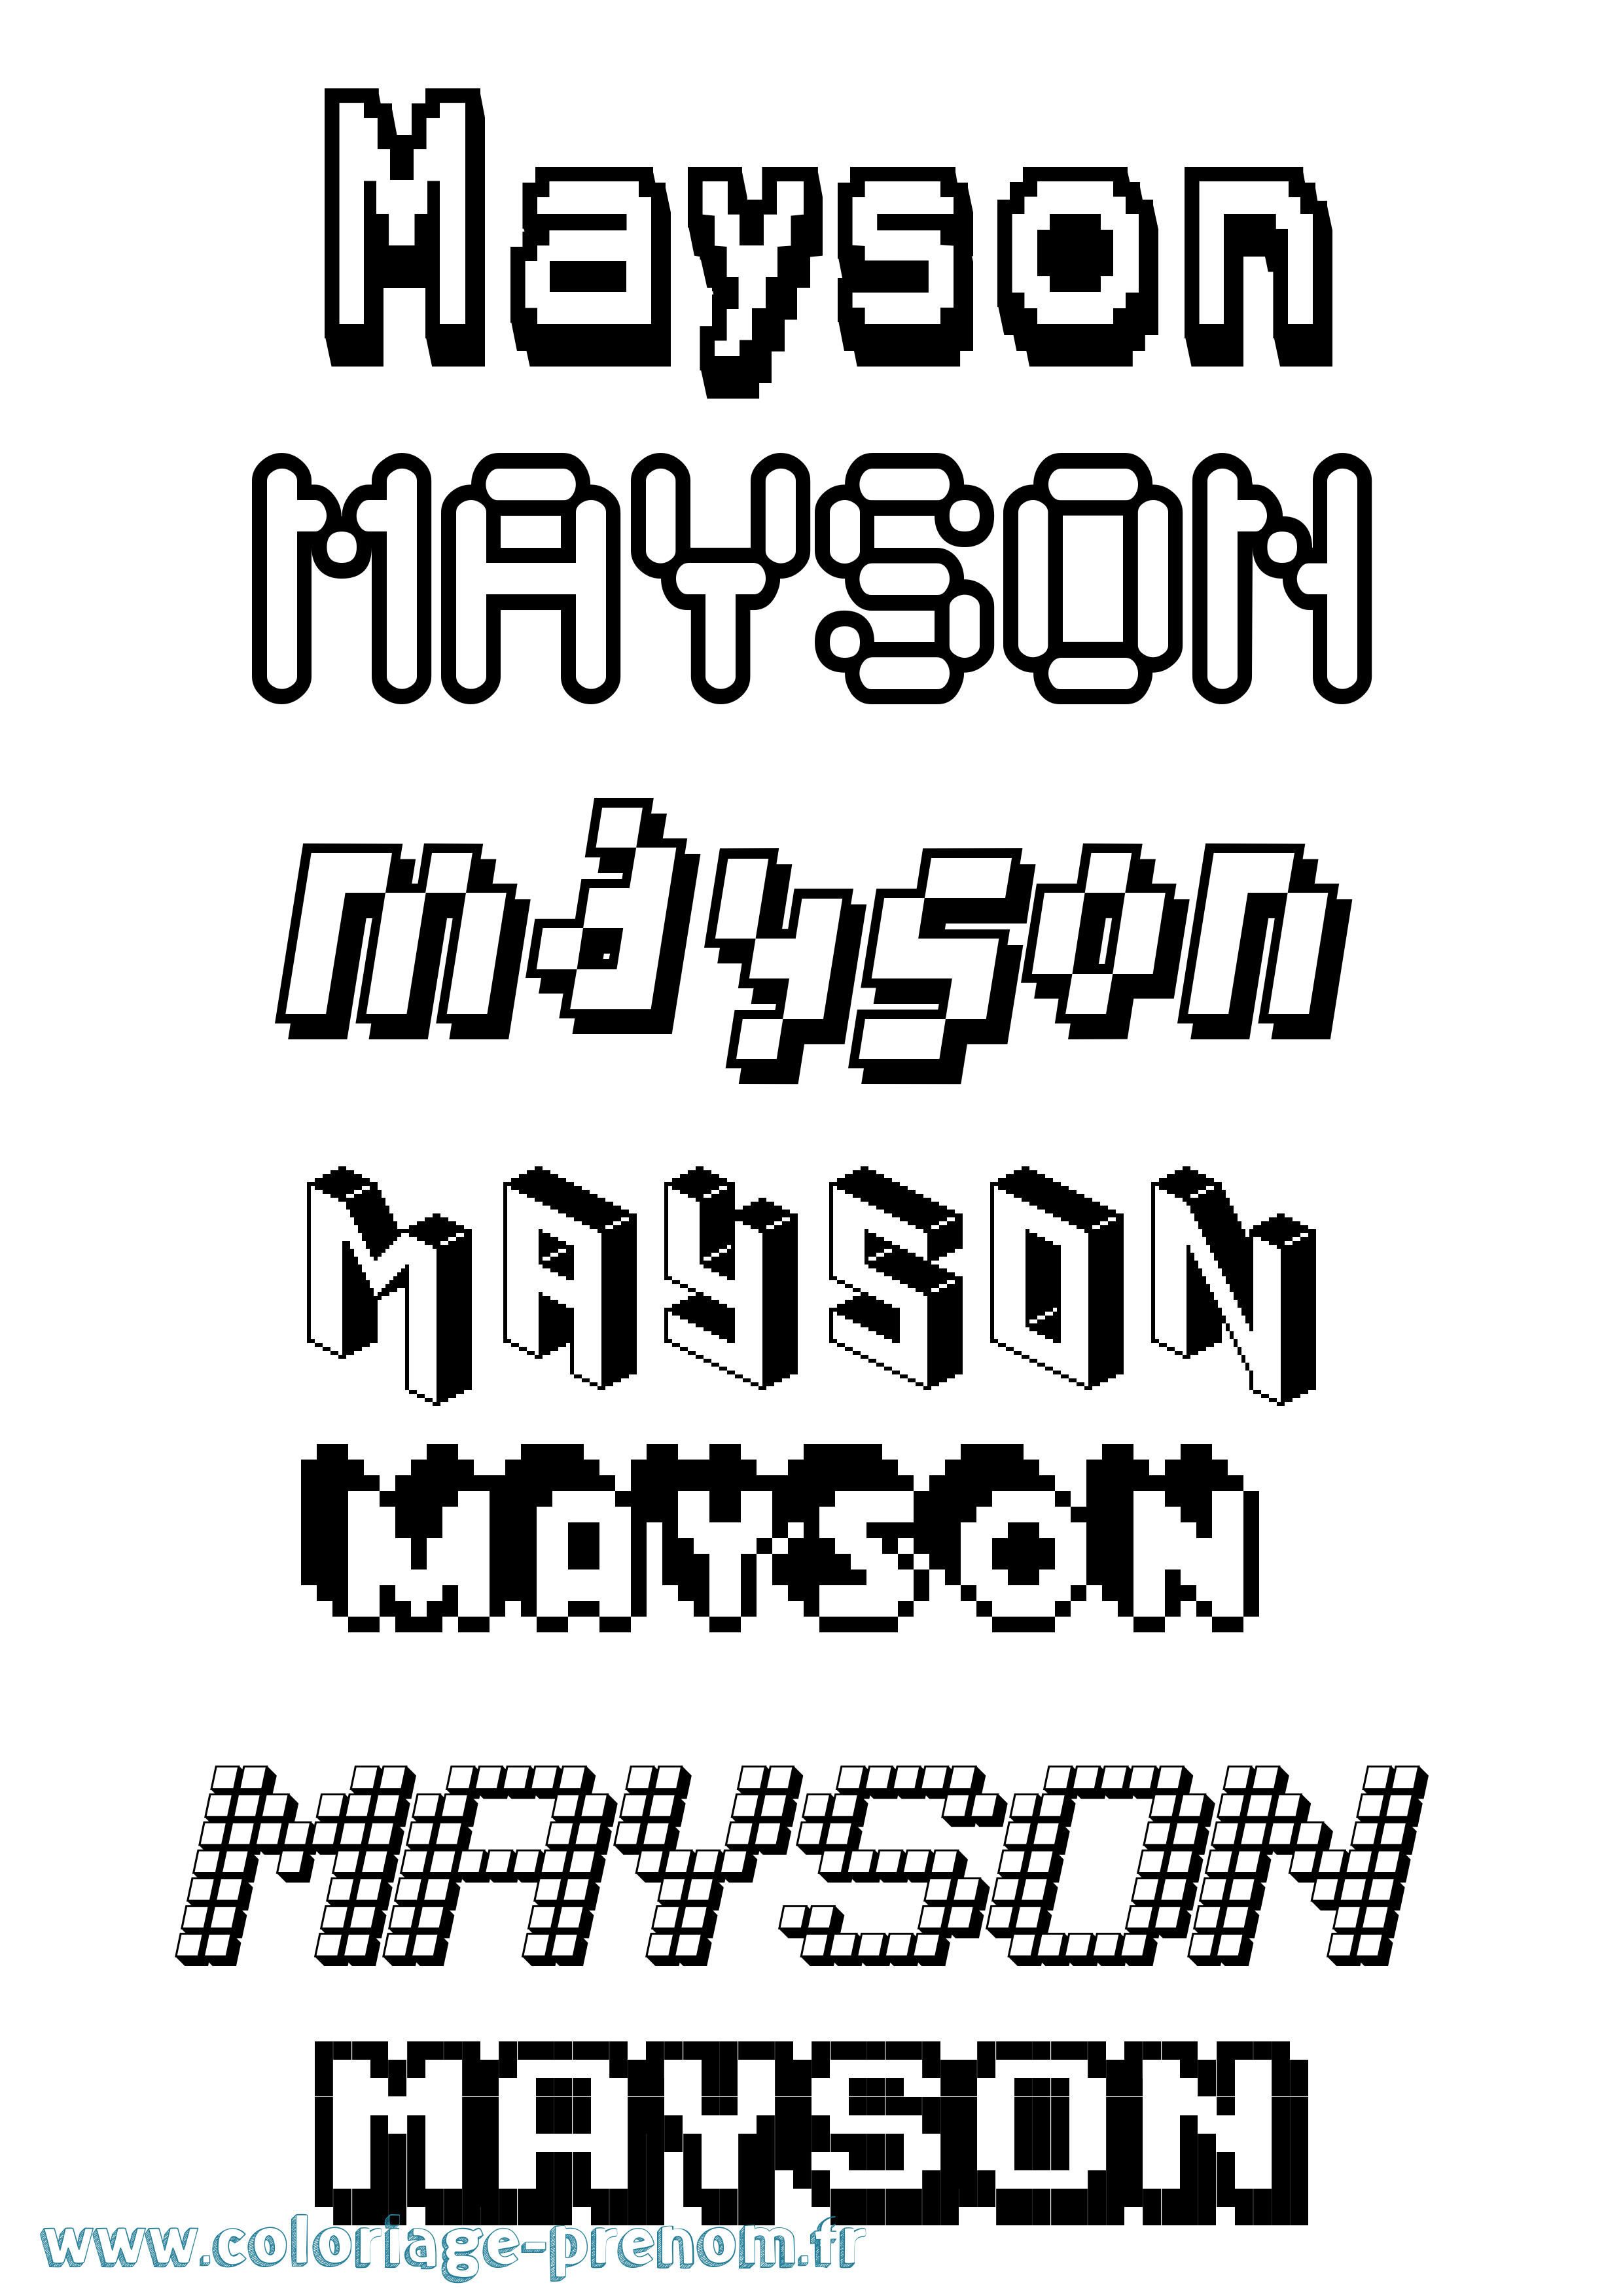 Coloriage prénom Mayson Pixel